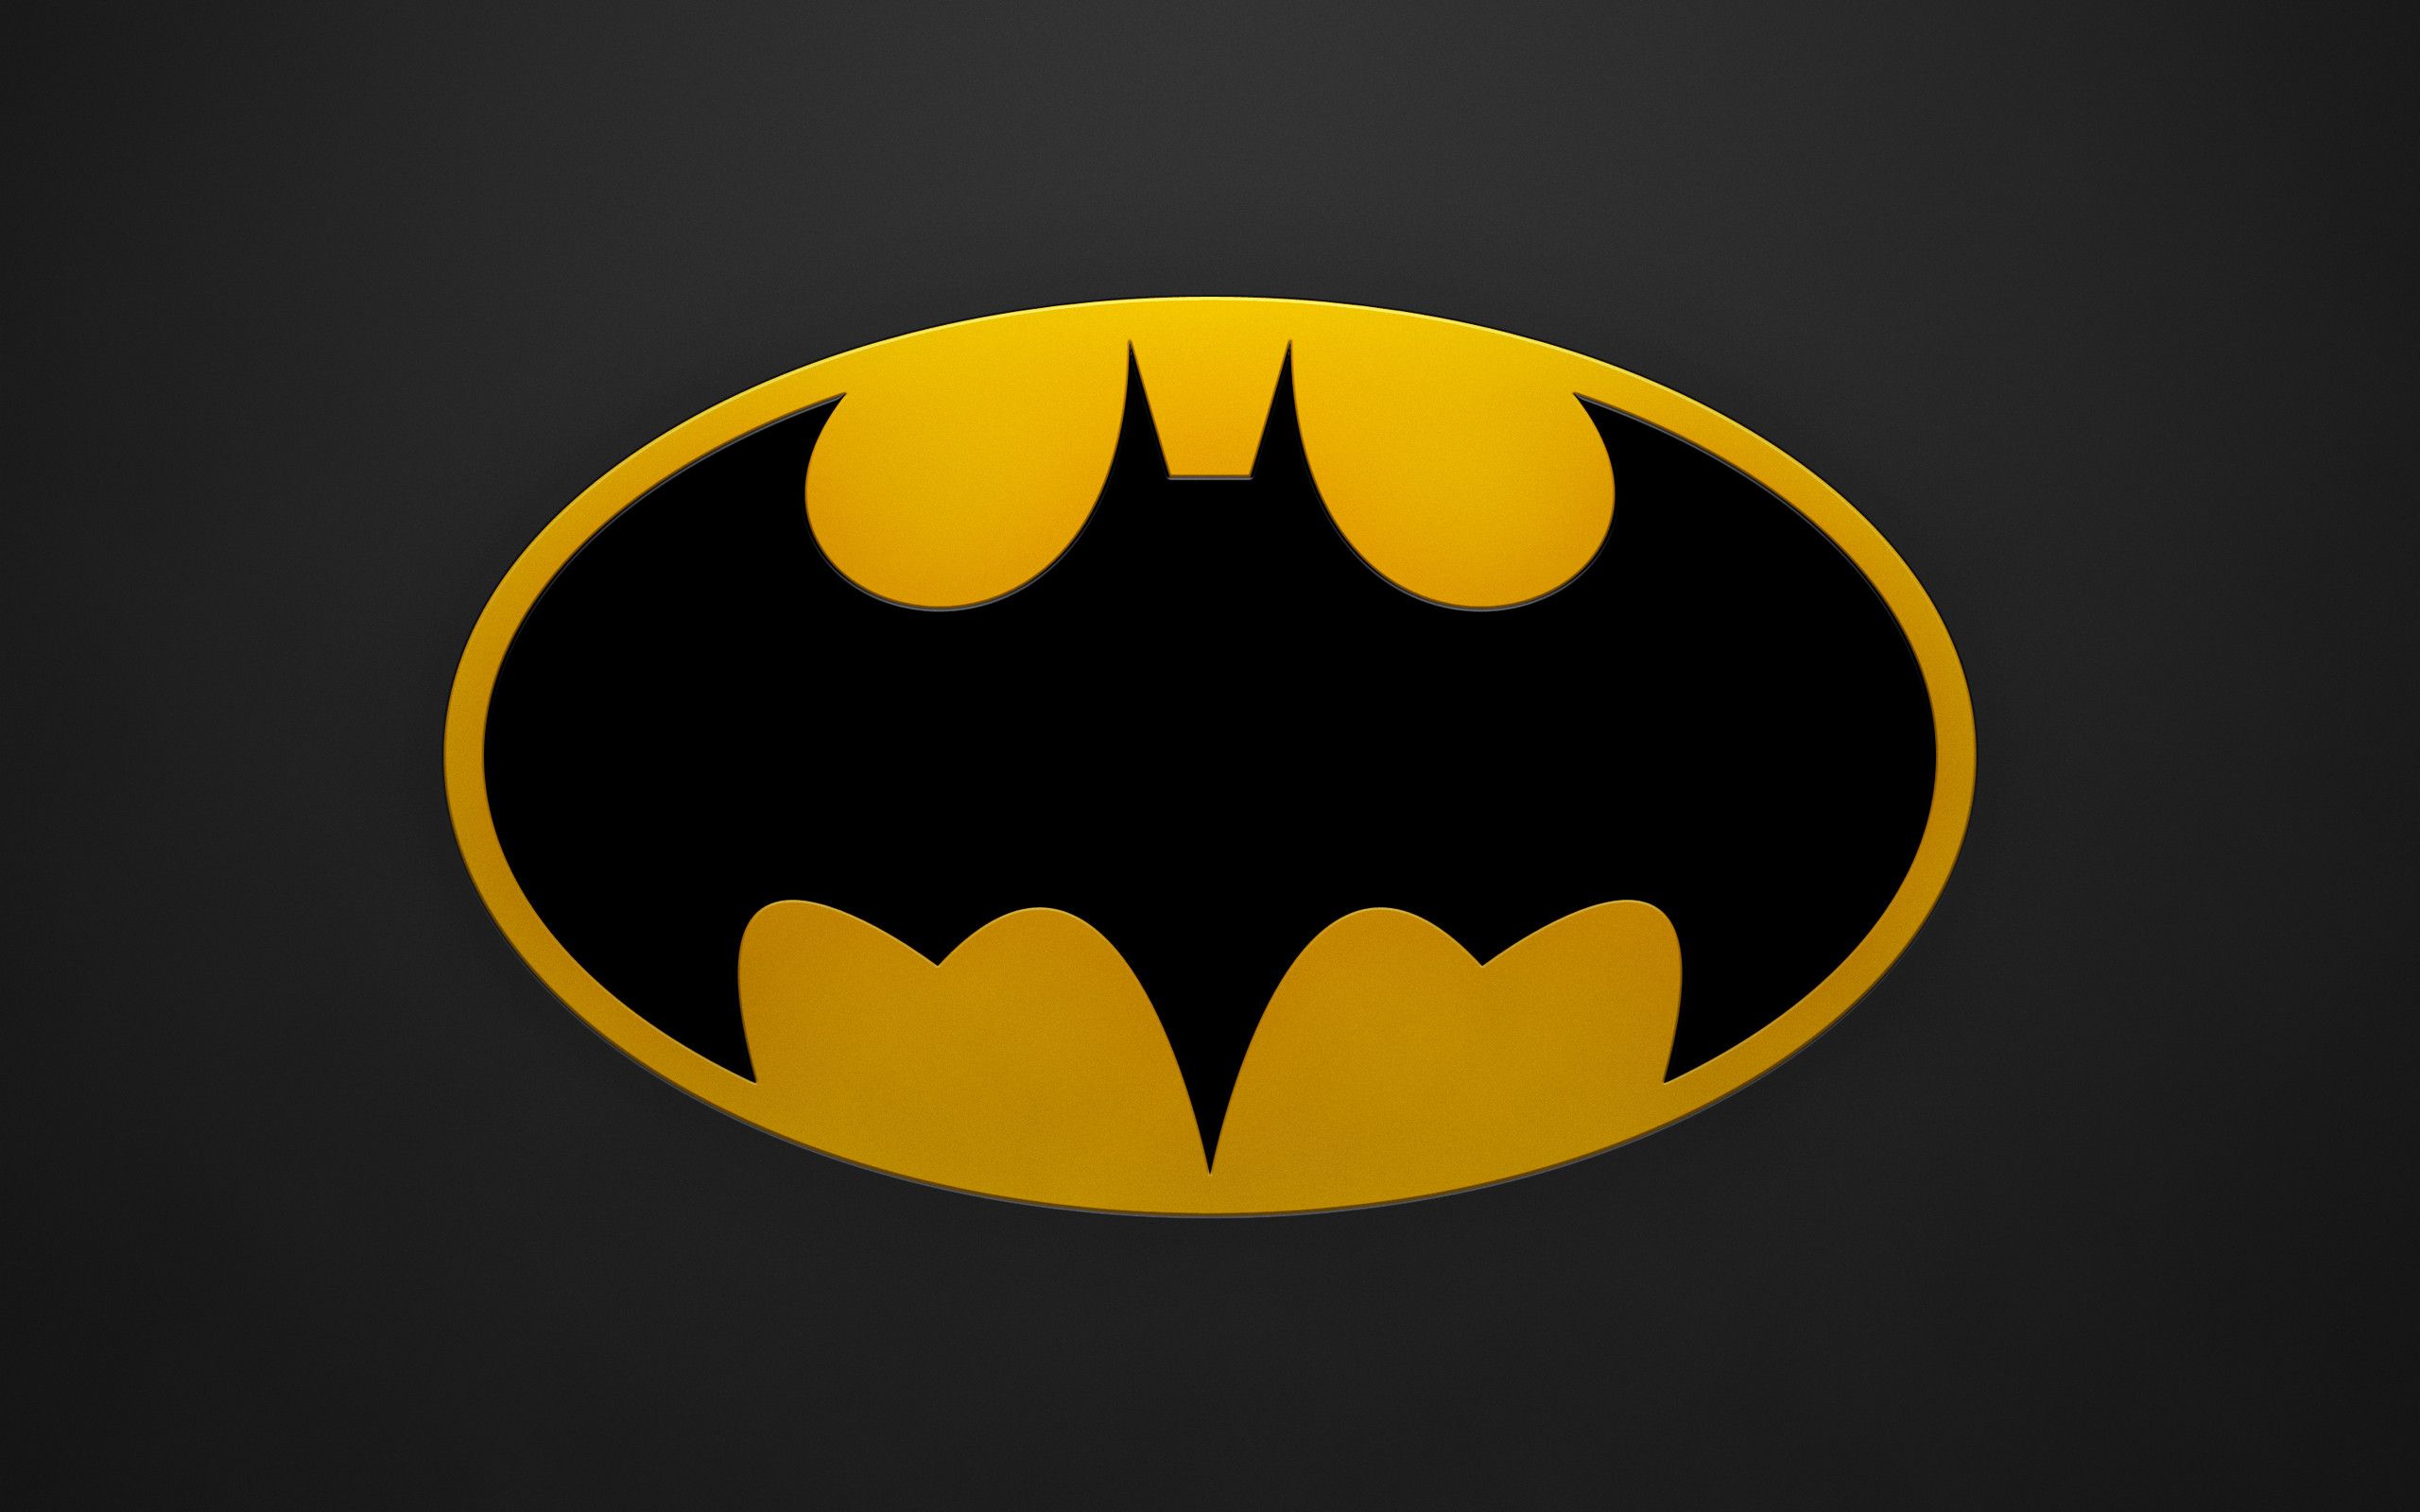 Bat symbol wallpaper